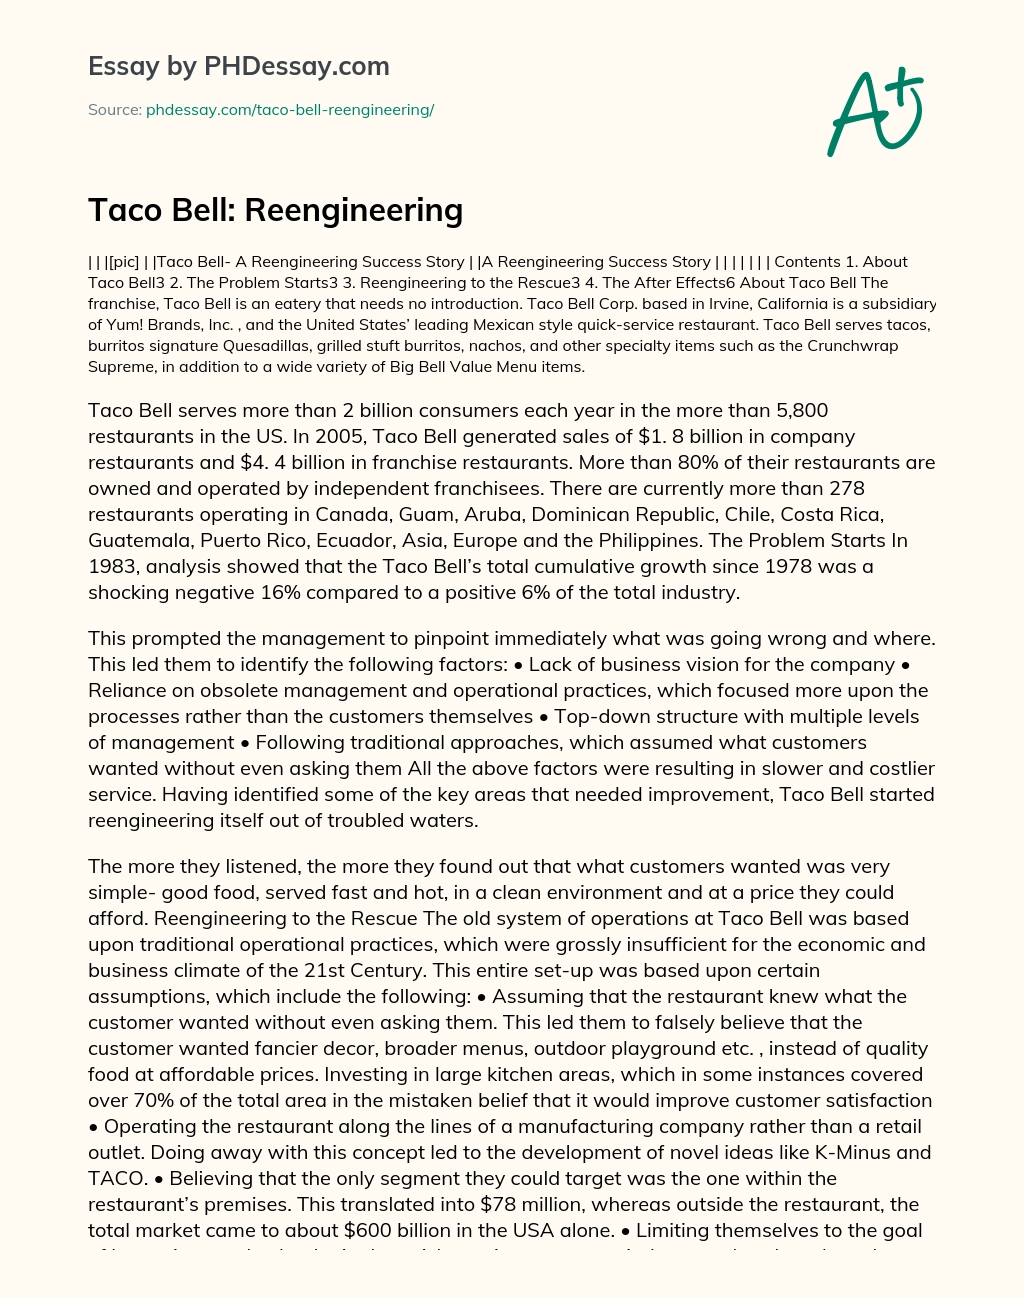 Taco Bell: Reengineering essay